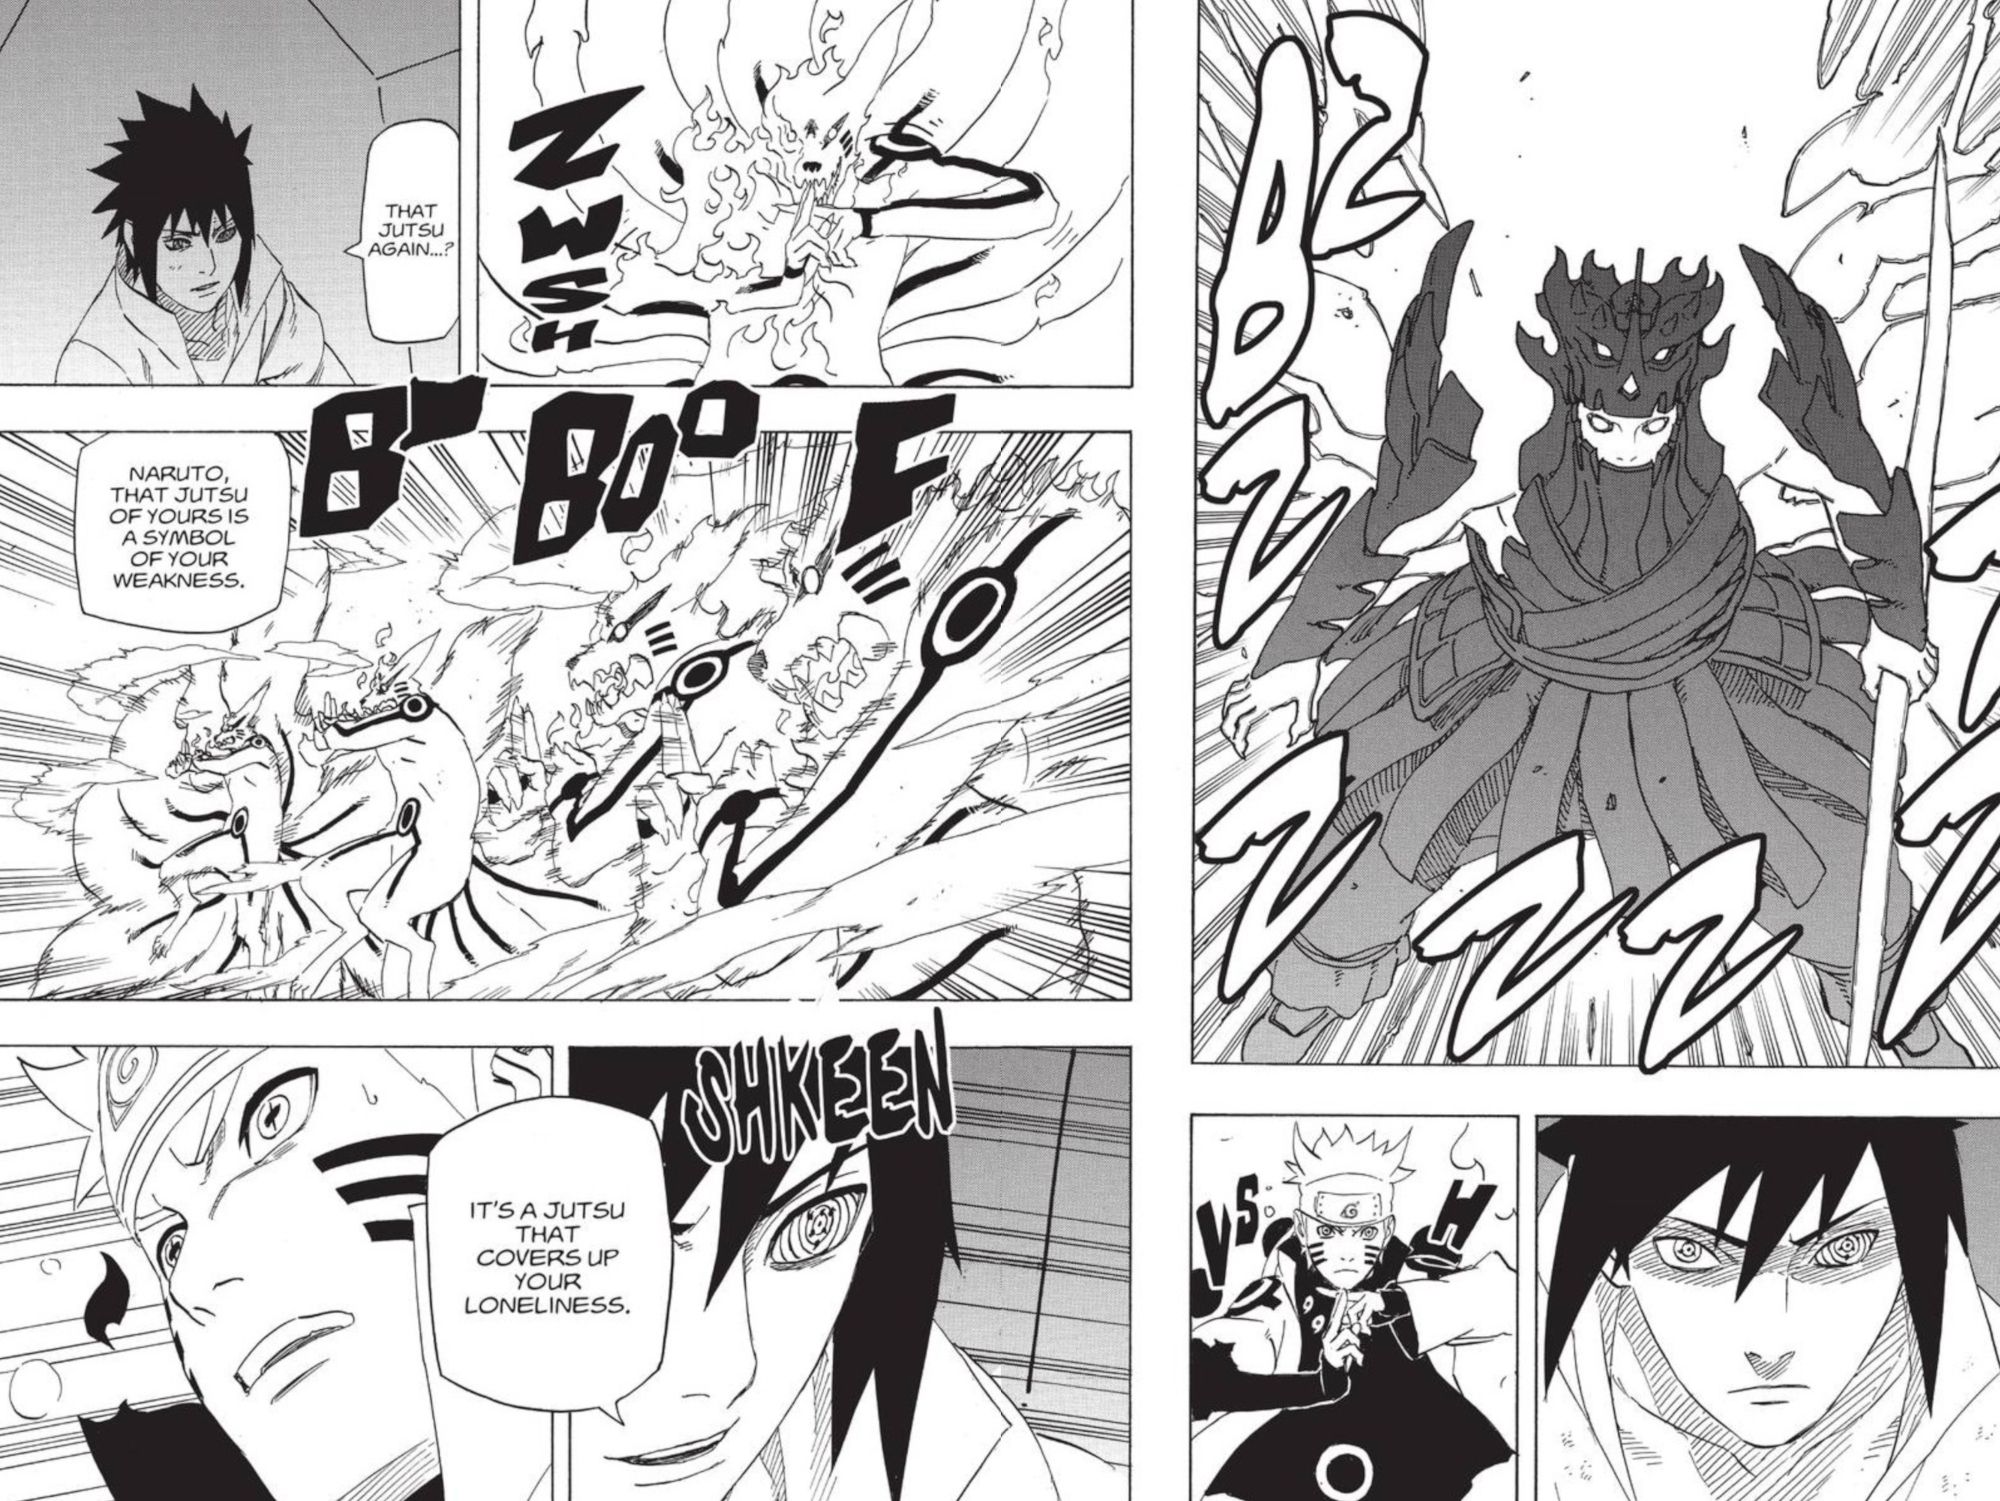 Naruto Capítulo 696 Clones das Sombras de Sasuke Sunsanoo